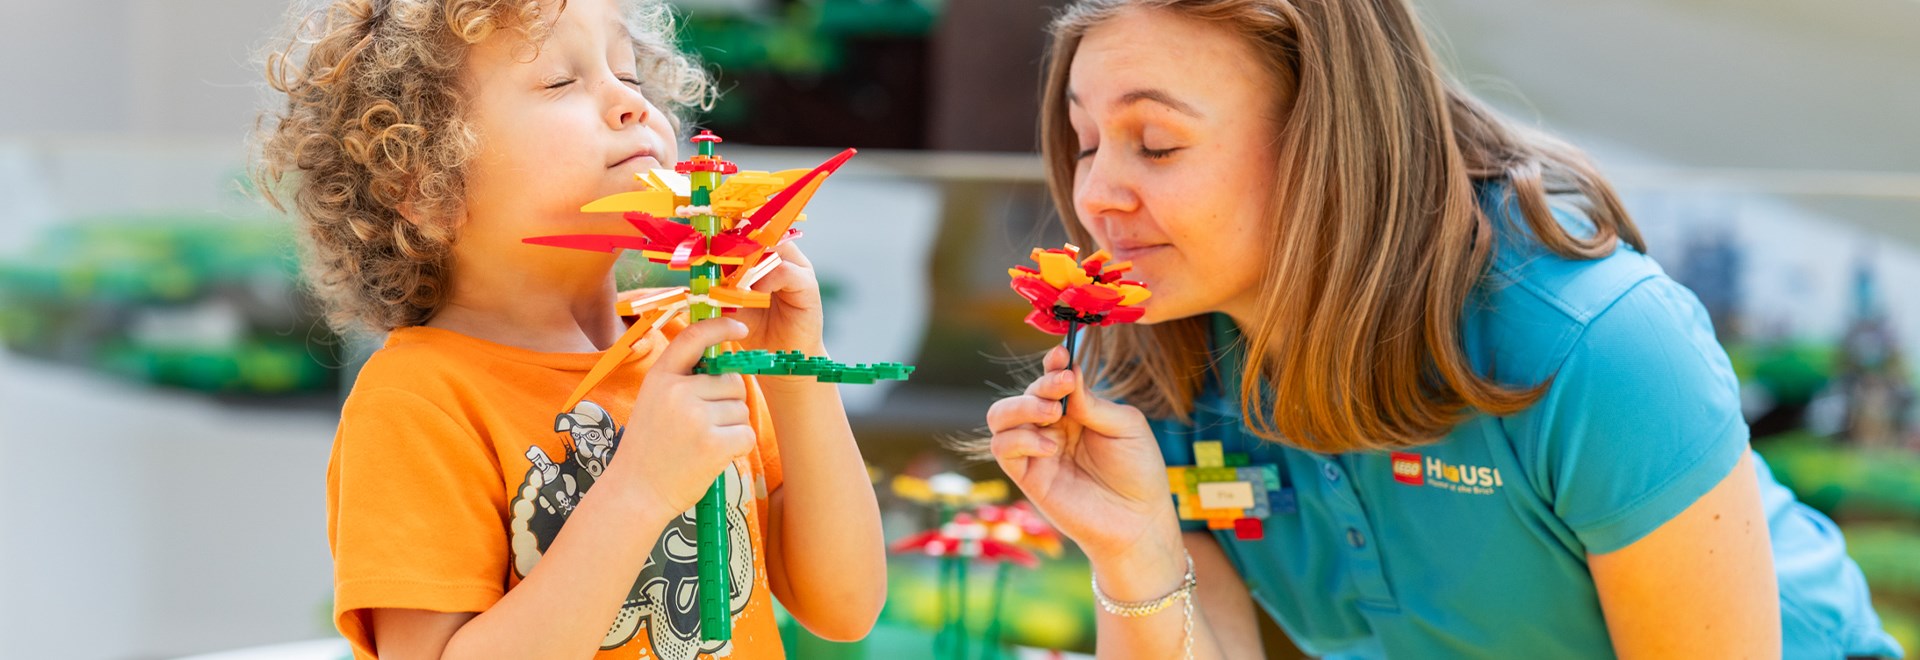 Frühlingsspaß für die ganze Familie im LEGO House